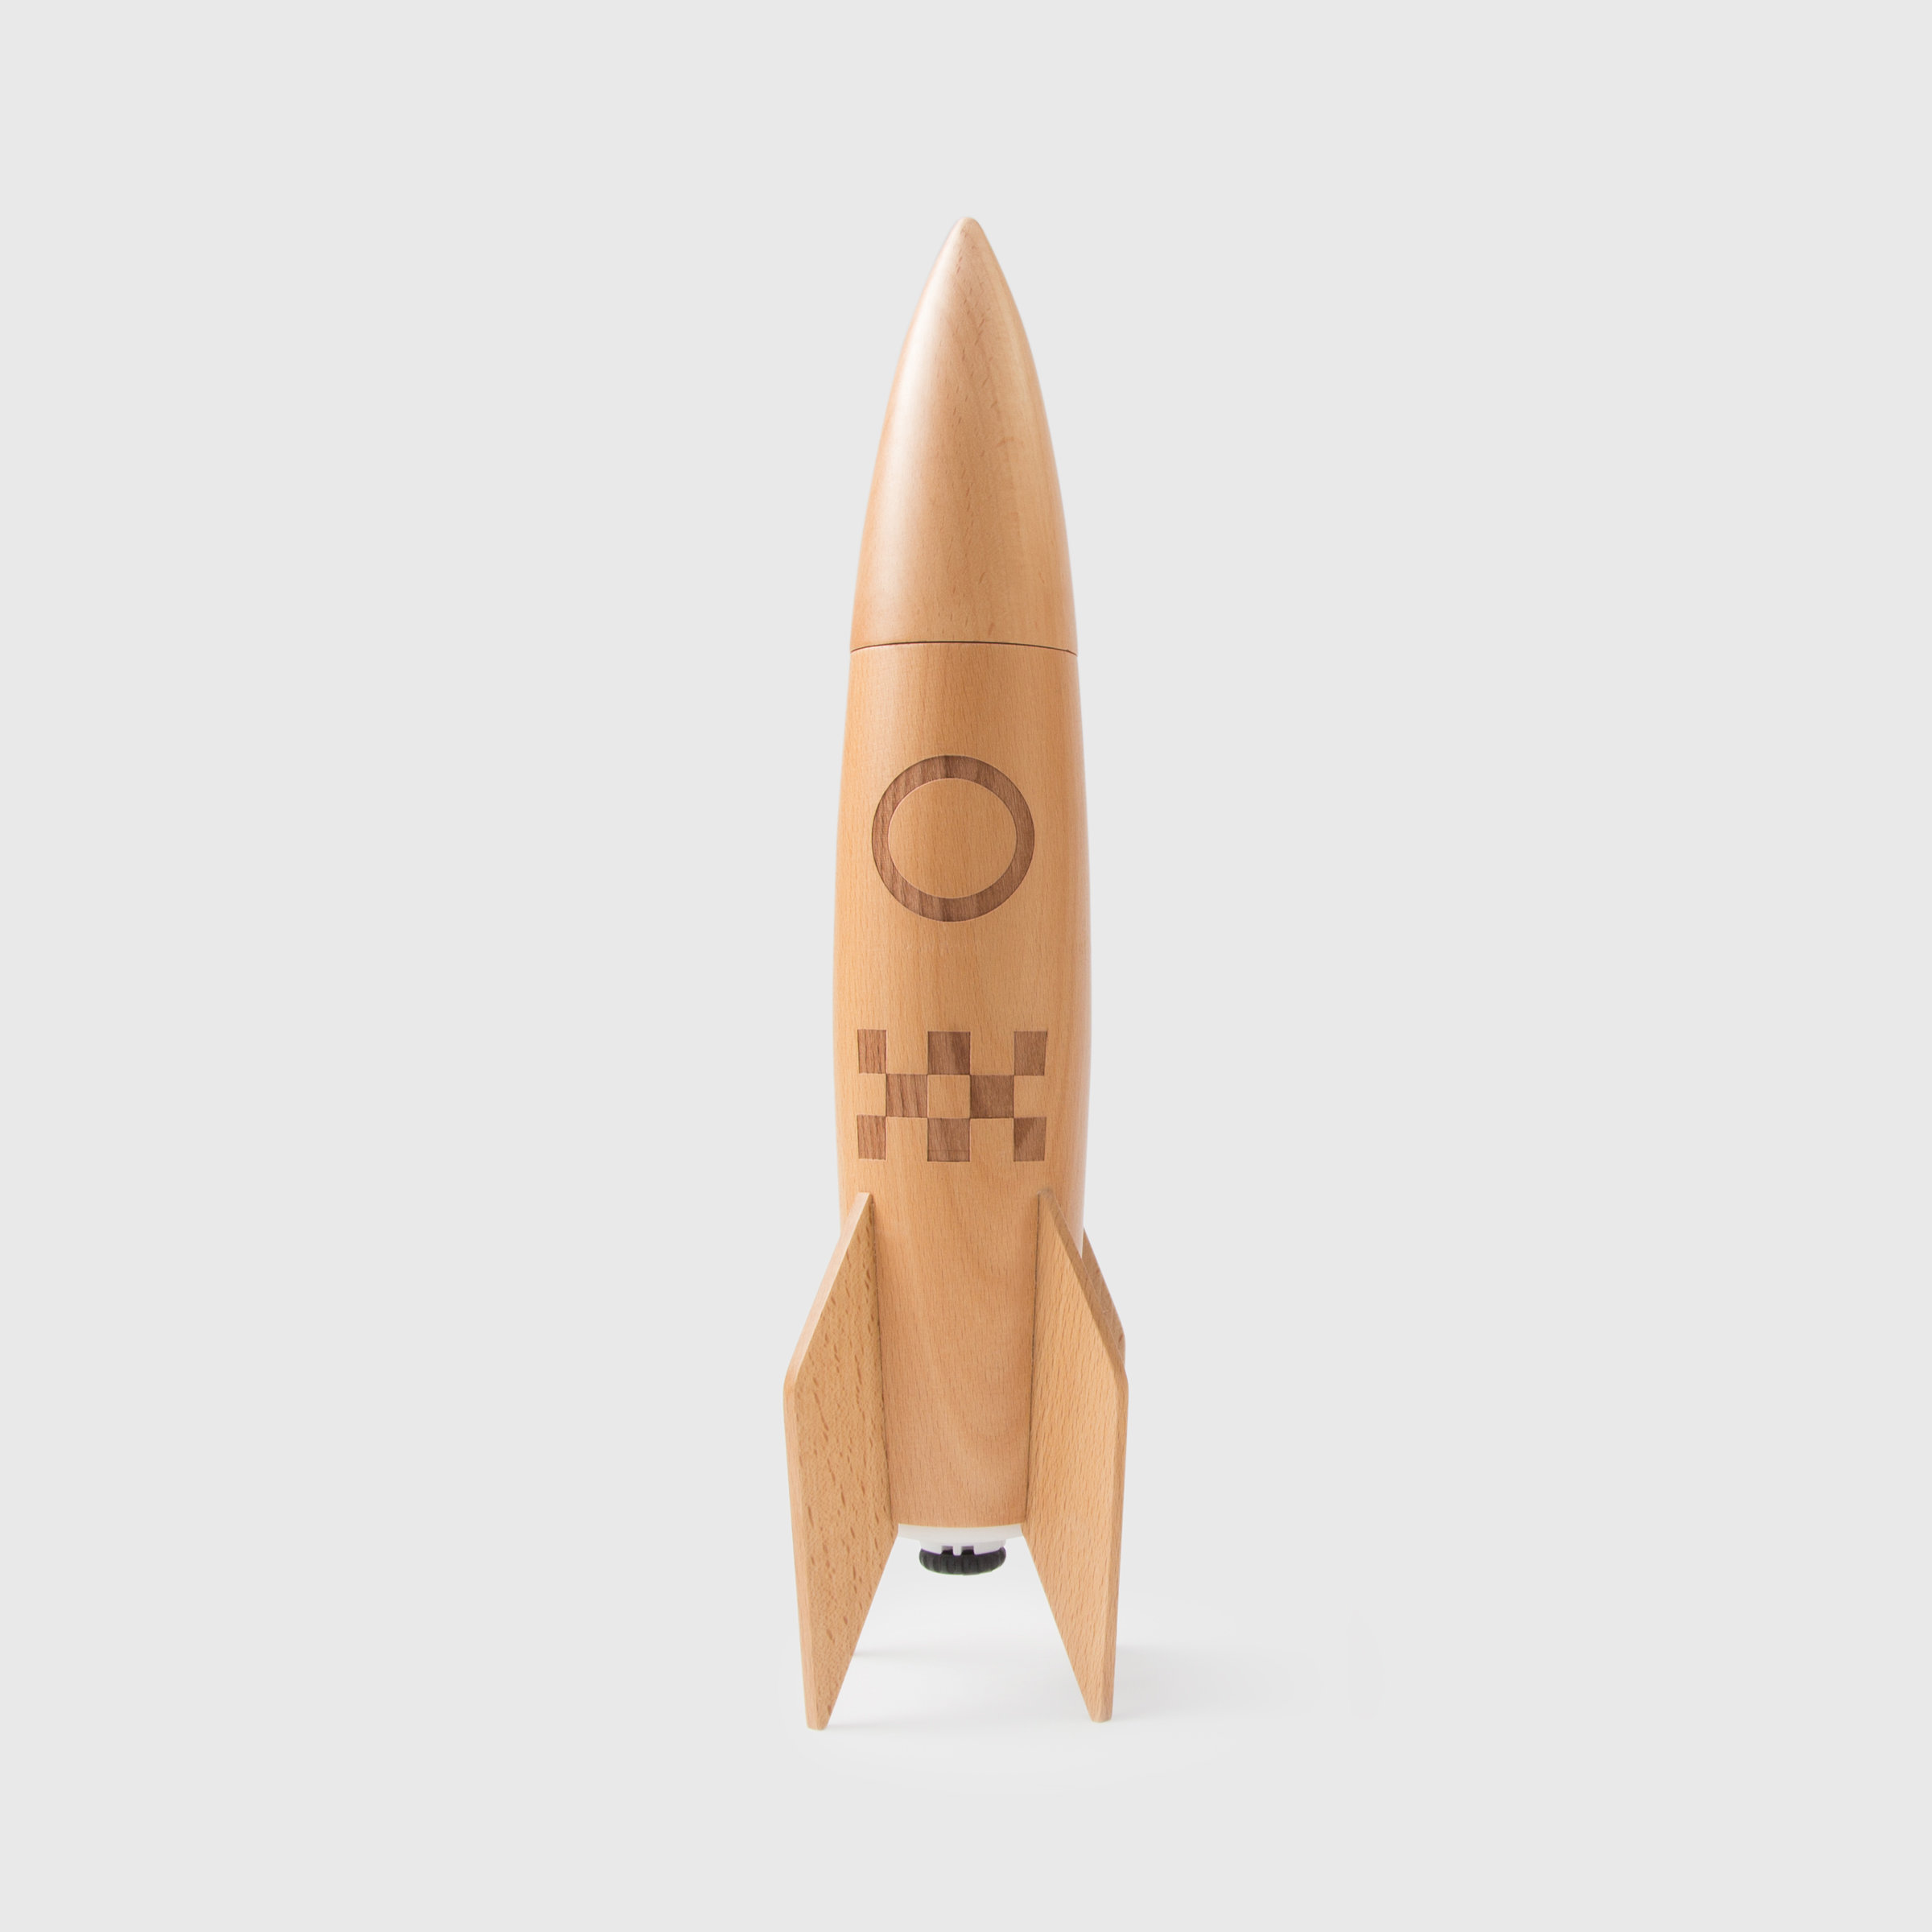 Wooden rocket salt and pepper grinder in light wood